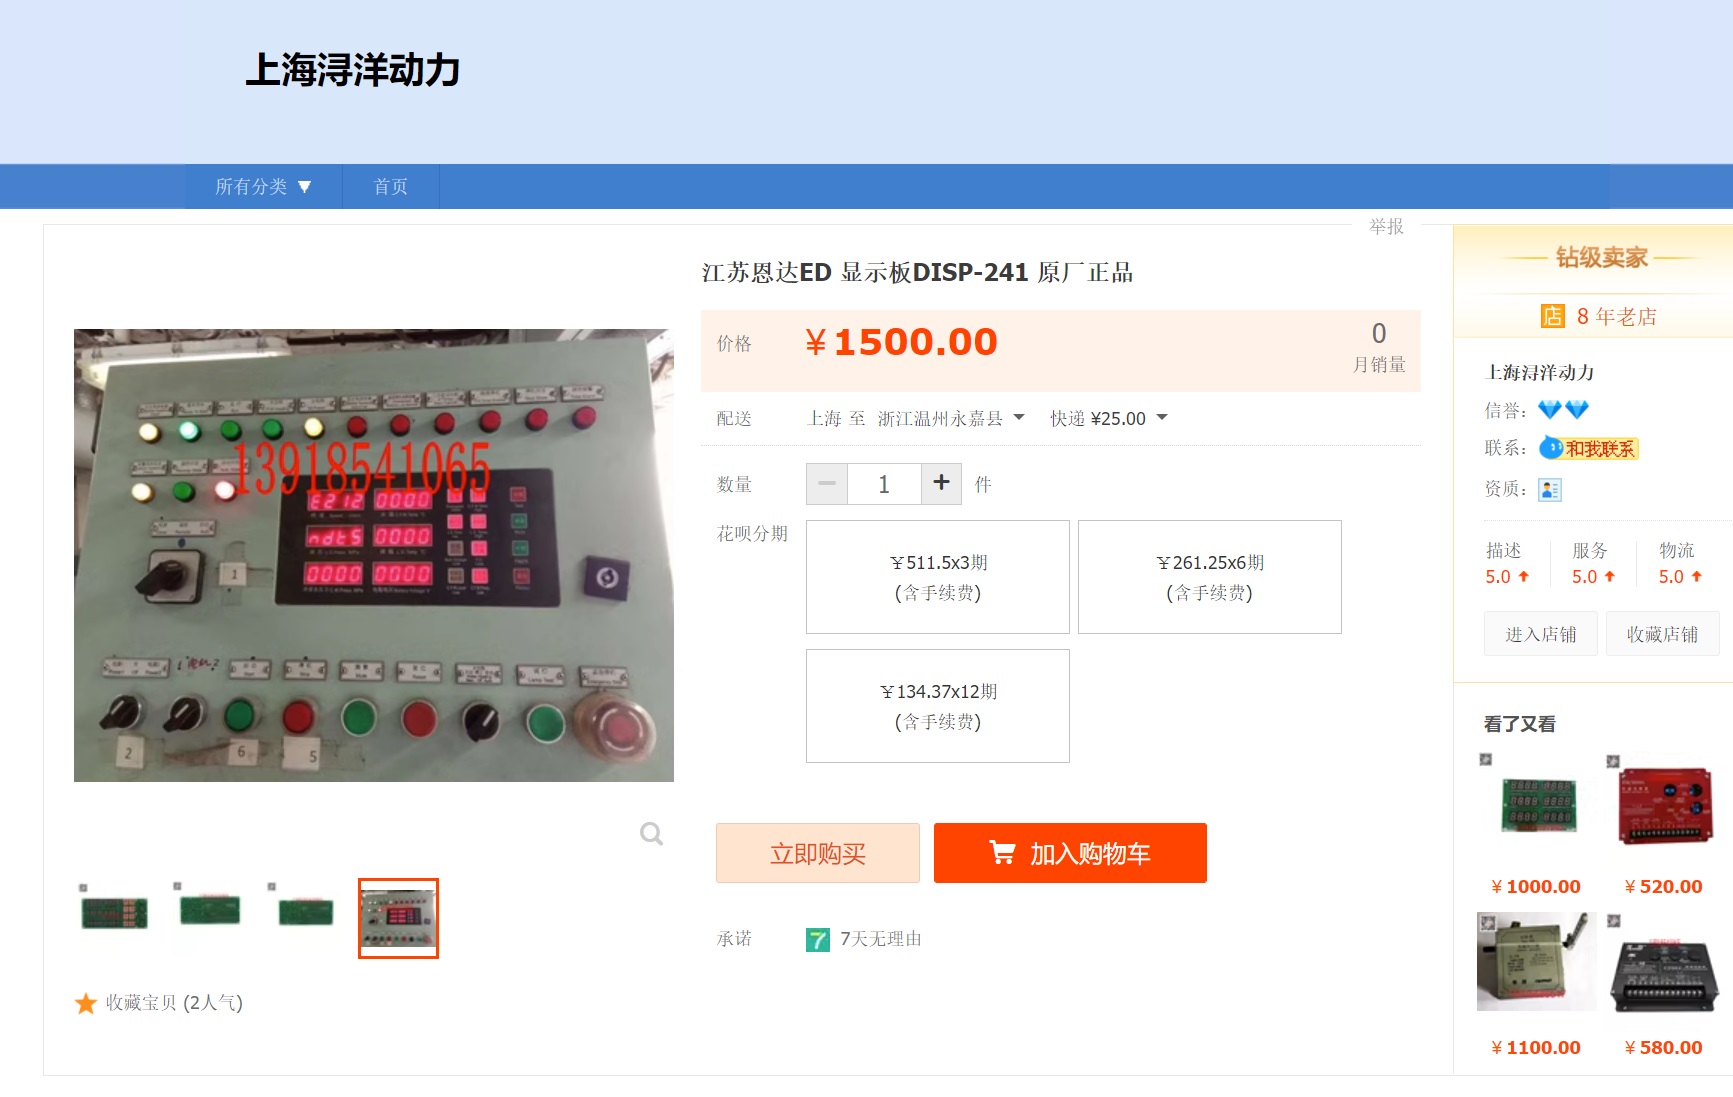 لوحة عرض Jiangsu Enda Ed DISP-241 هي منتج أصلي من المصنع الأصلي